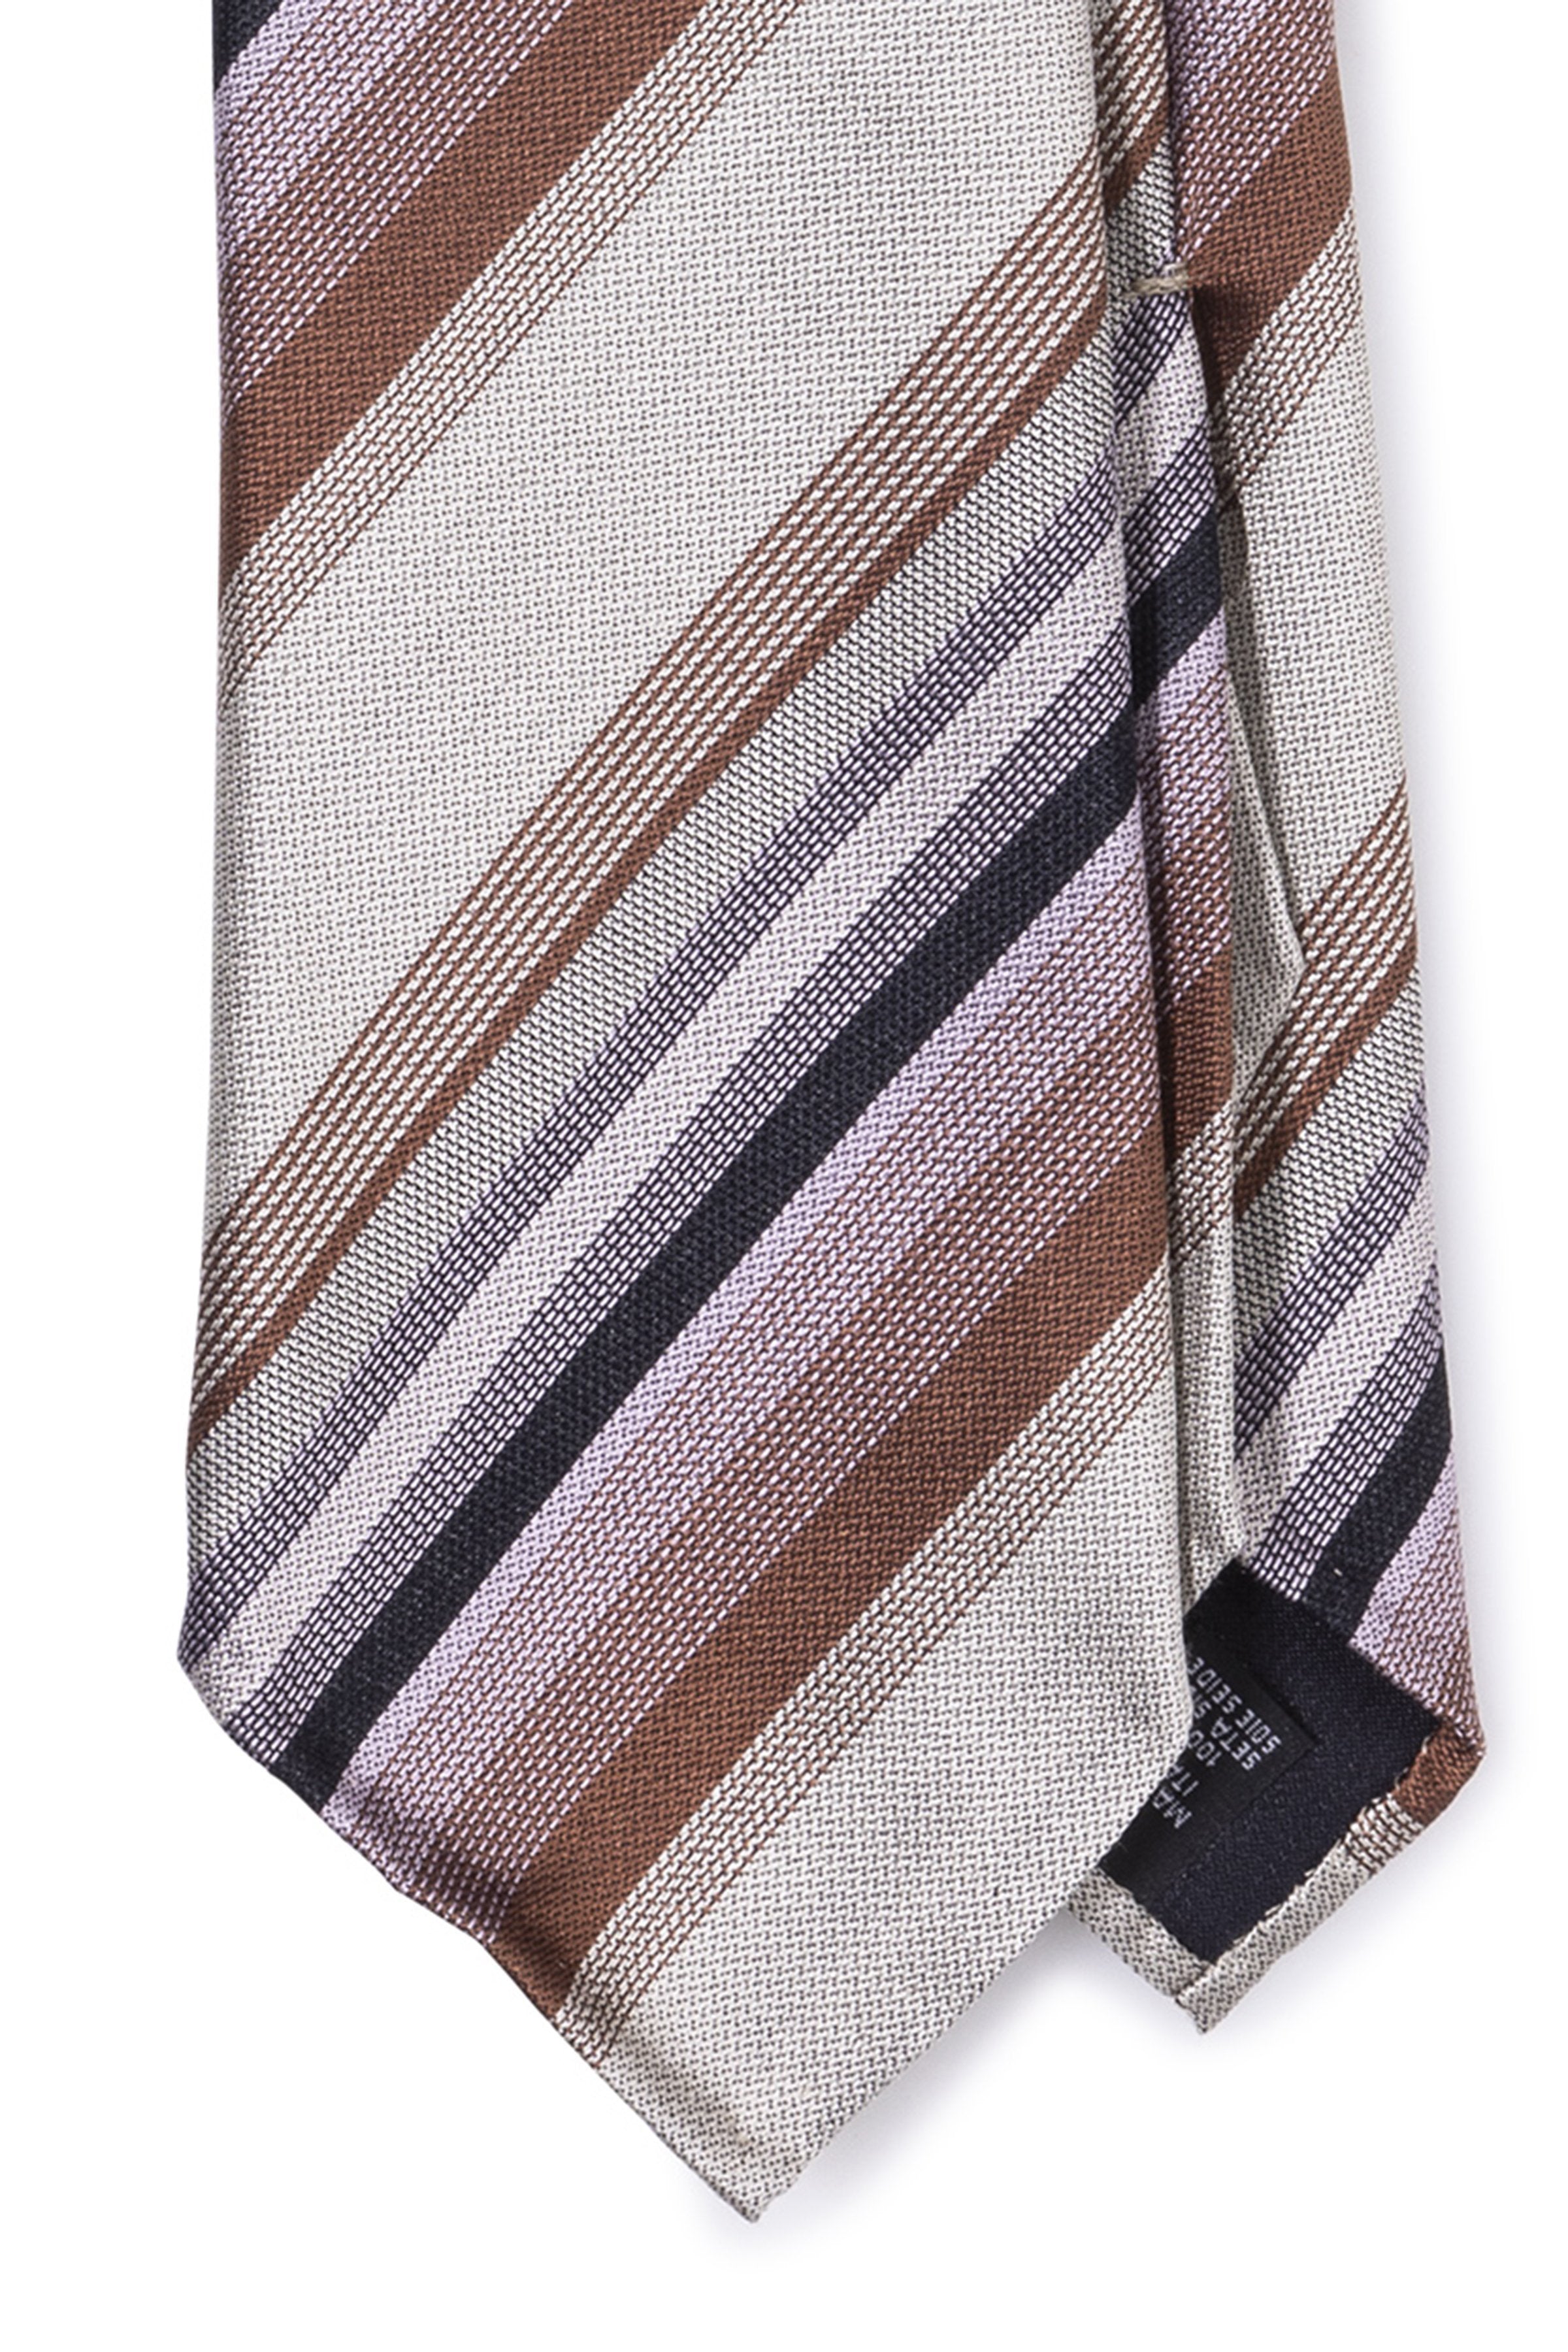 Tie Your Tie Silver/Brown/Purple/Navy Seven Fold Silk Tie